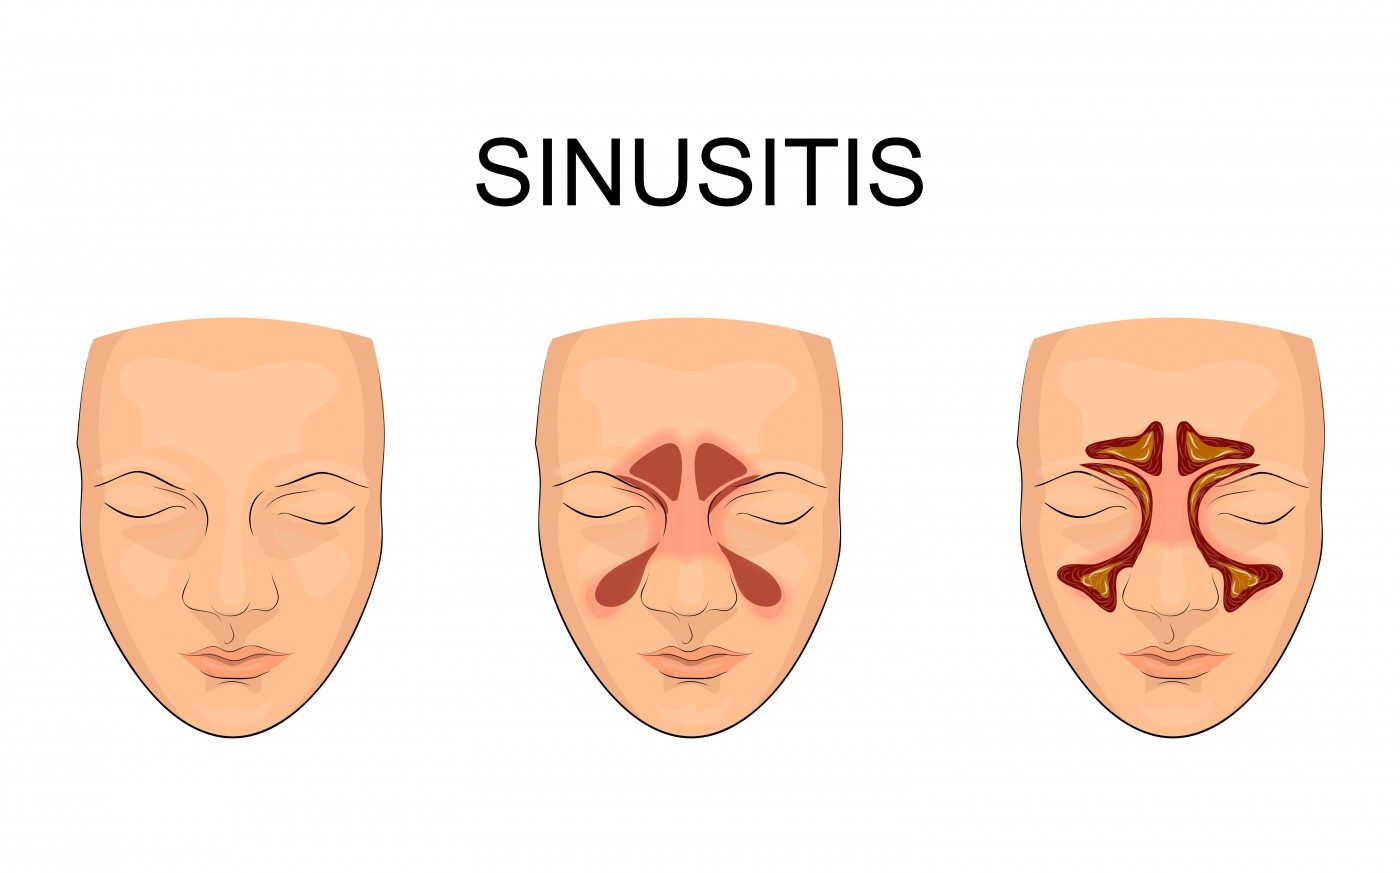 sinusitis